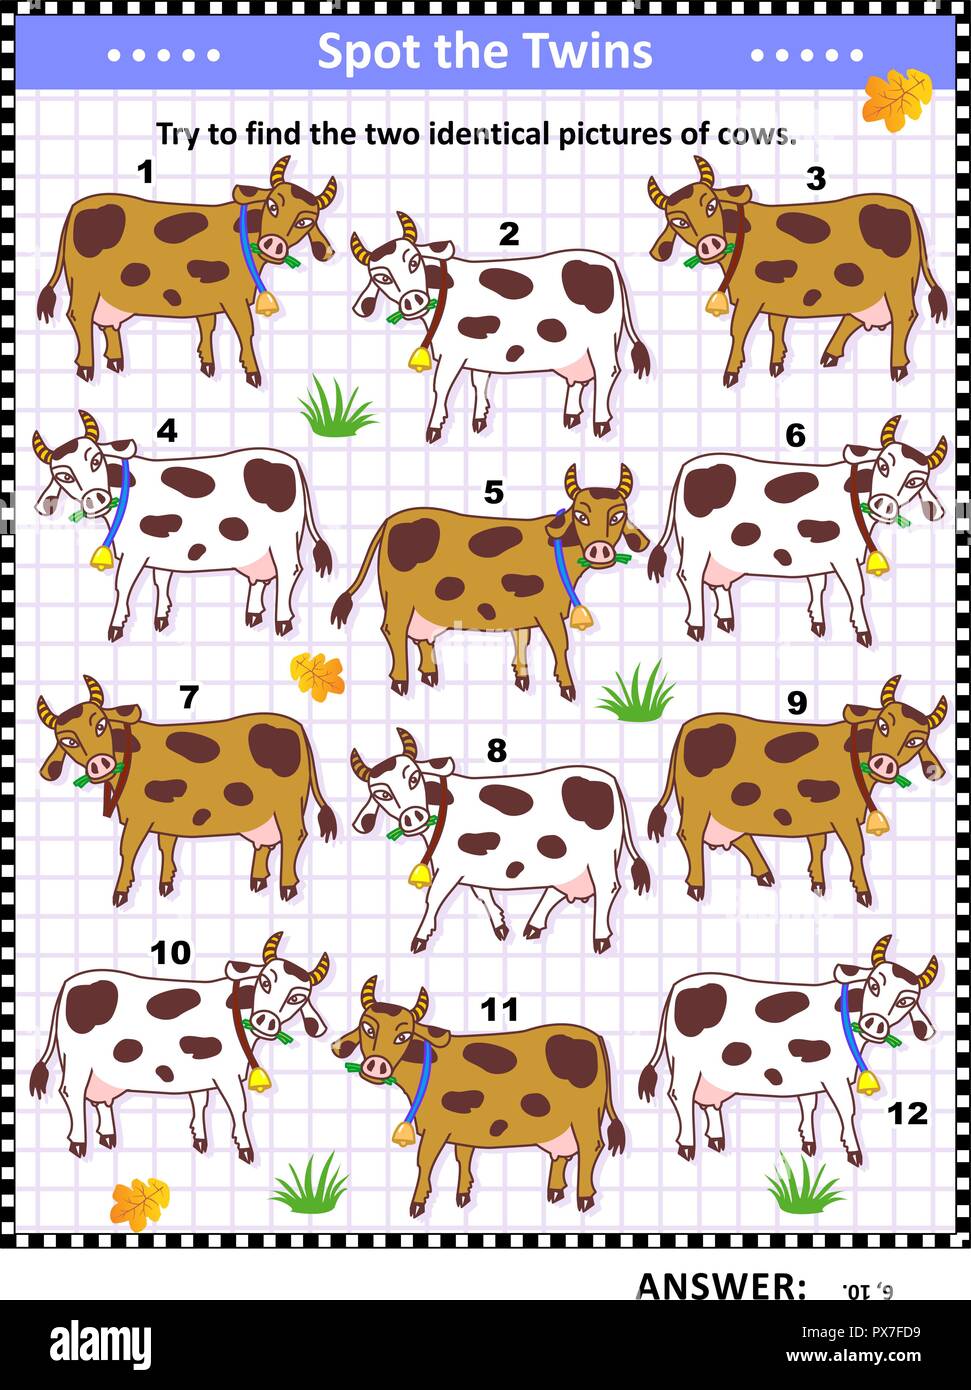 Visual logic puzzle con macchiato di vacche da latte: puoi trovare le due immagini identiche? Risposta inclusa. Illustrazione Vettoriale